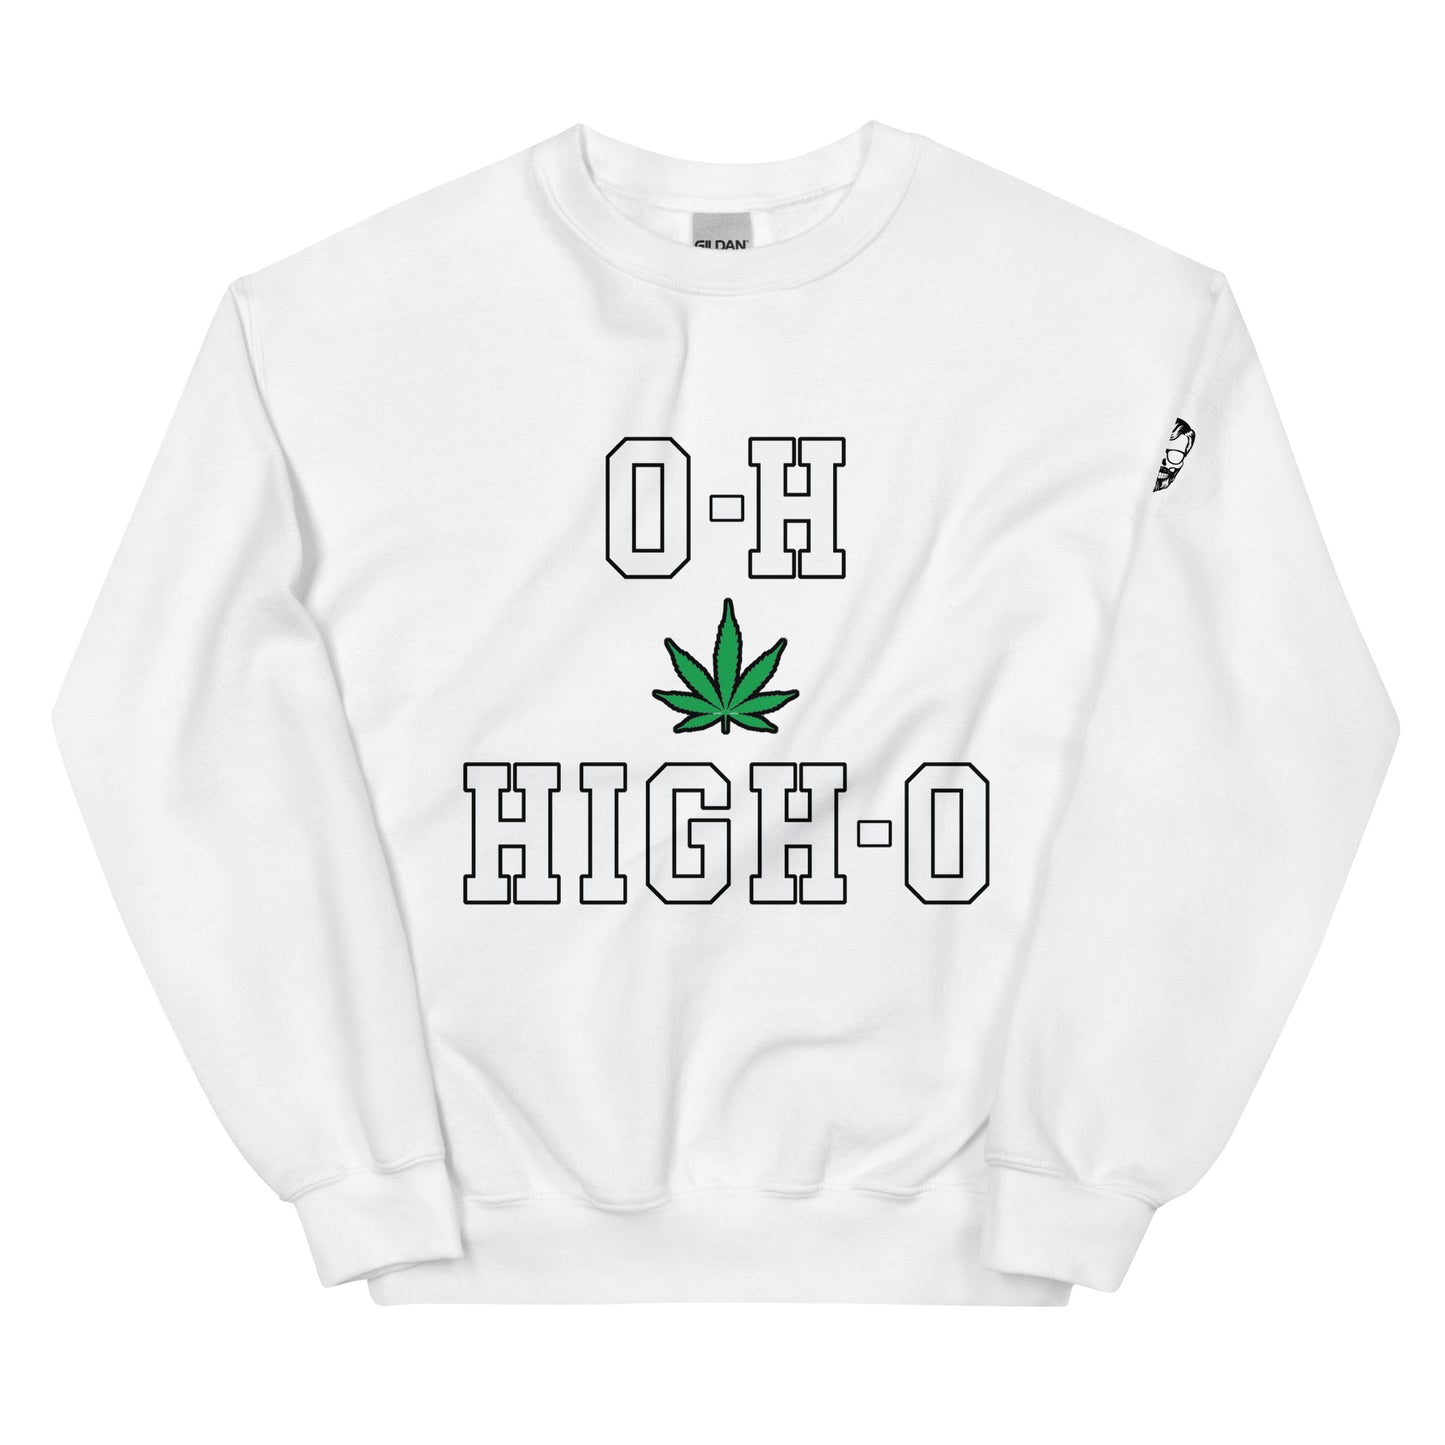 O-H HIGH-O Don Sy Unisex Sweatshirt